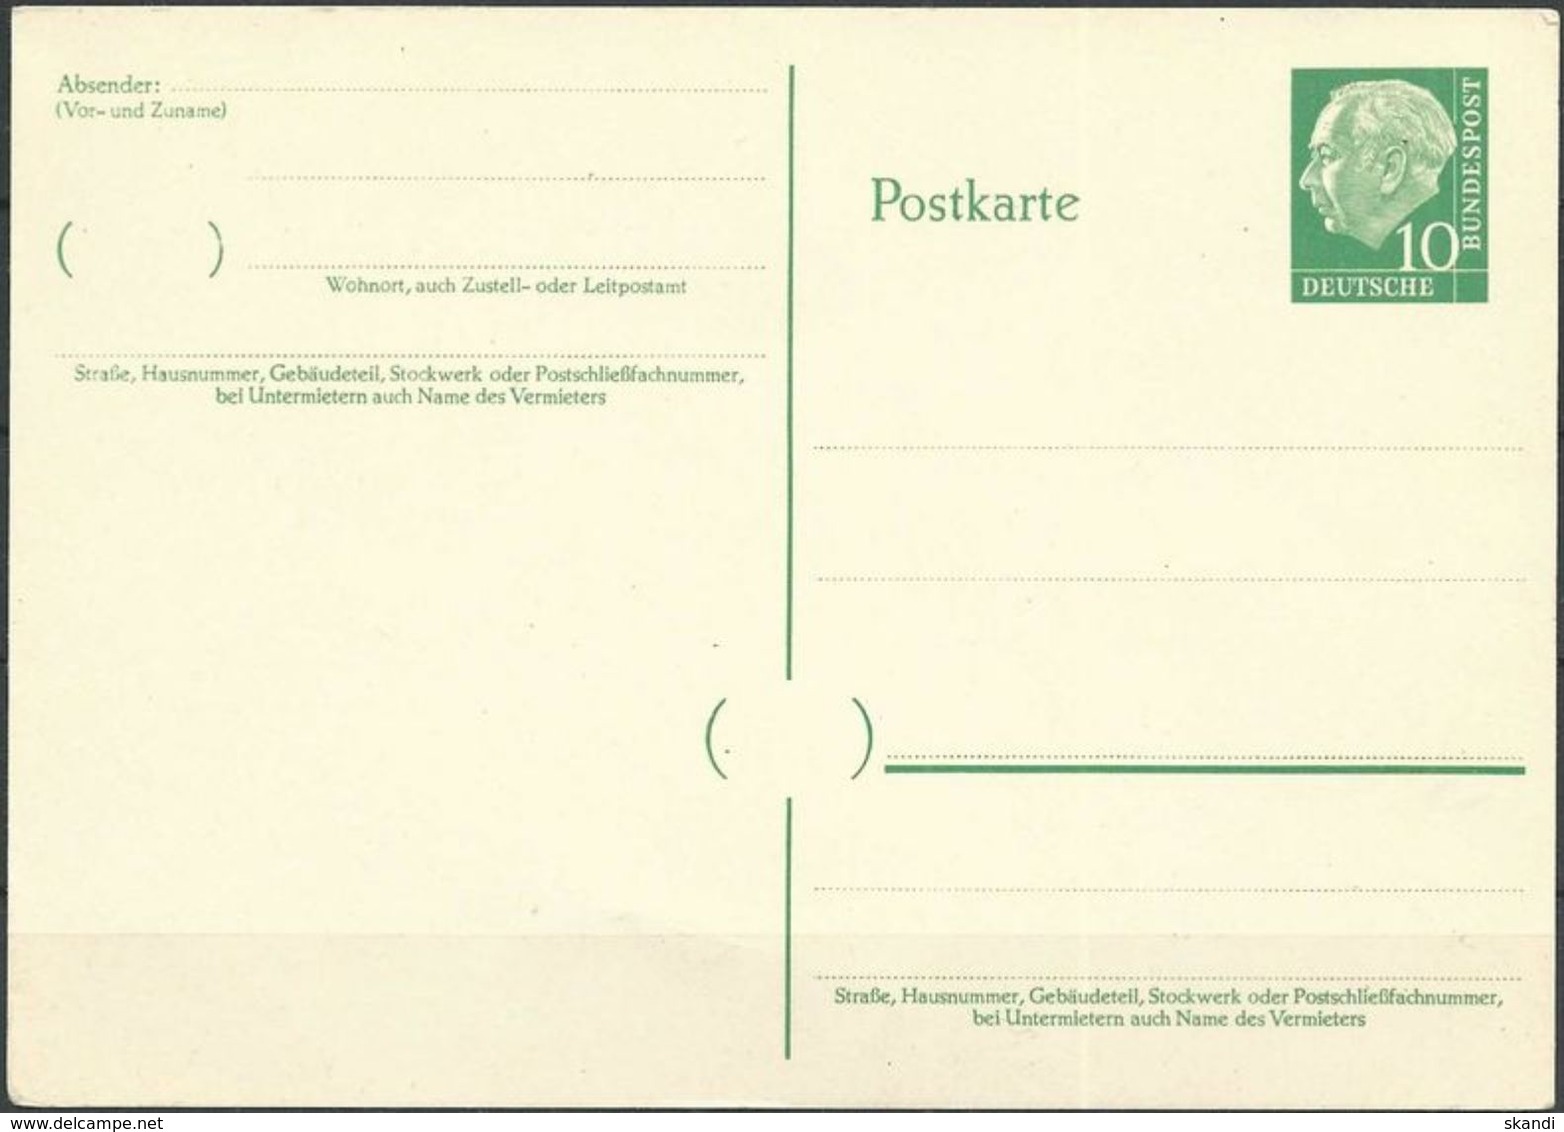 DEUTSCHLAND 1957 Mi-Nr. P 31 Postkarte Ungelaufen Siehe Scan - Postkarten - Ungebraucht